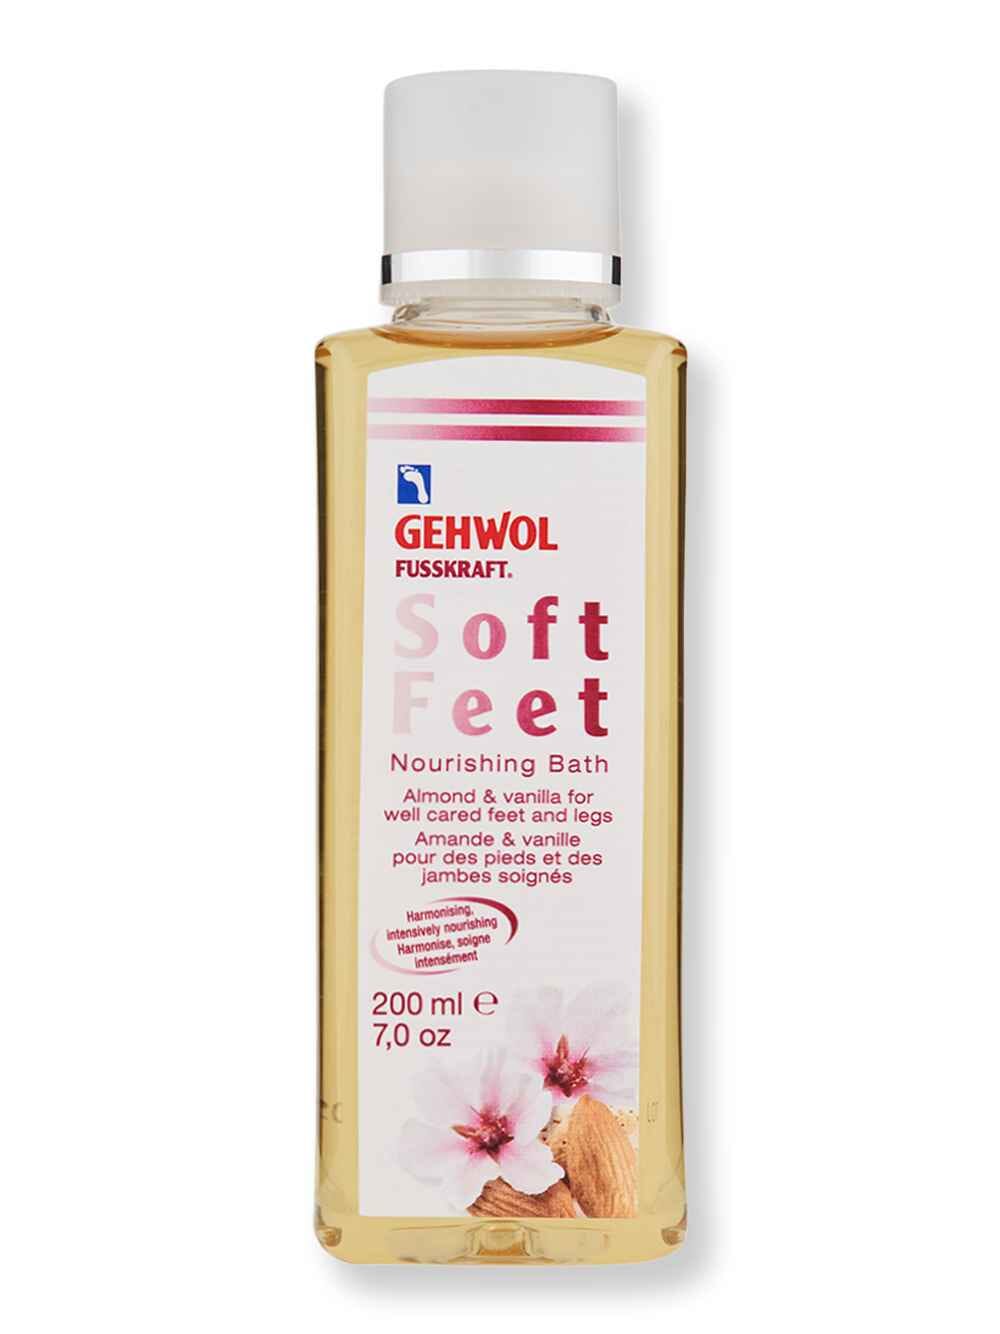 Gehwol Gehwol Soft Feet Nourishing Bath 7 oz200 ml Foot Creams & Treatments 